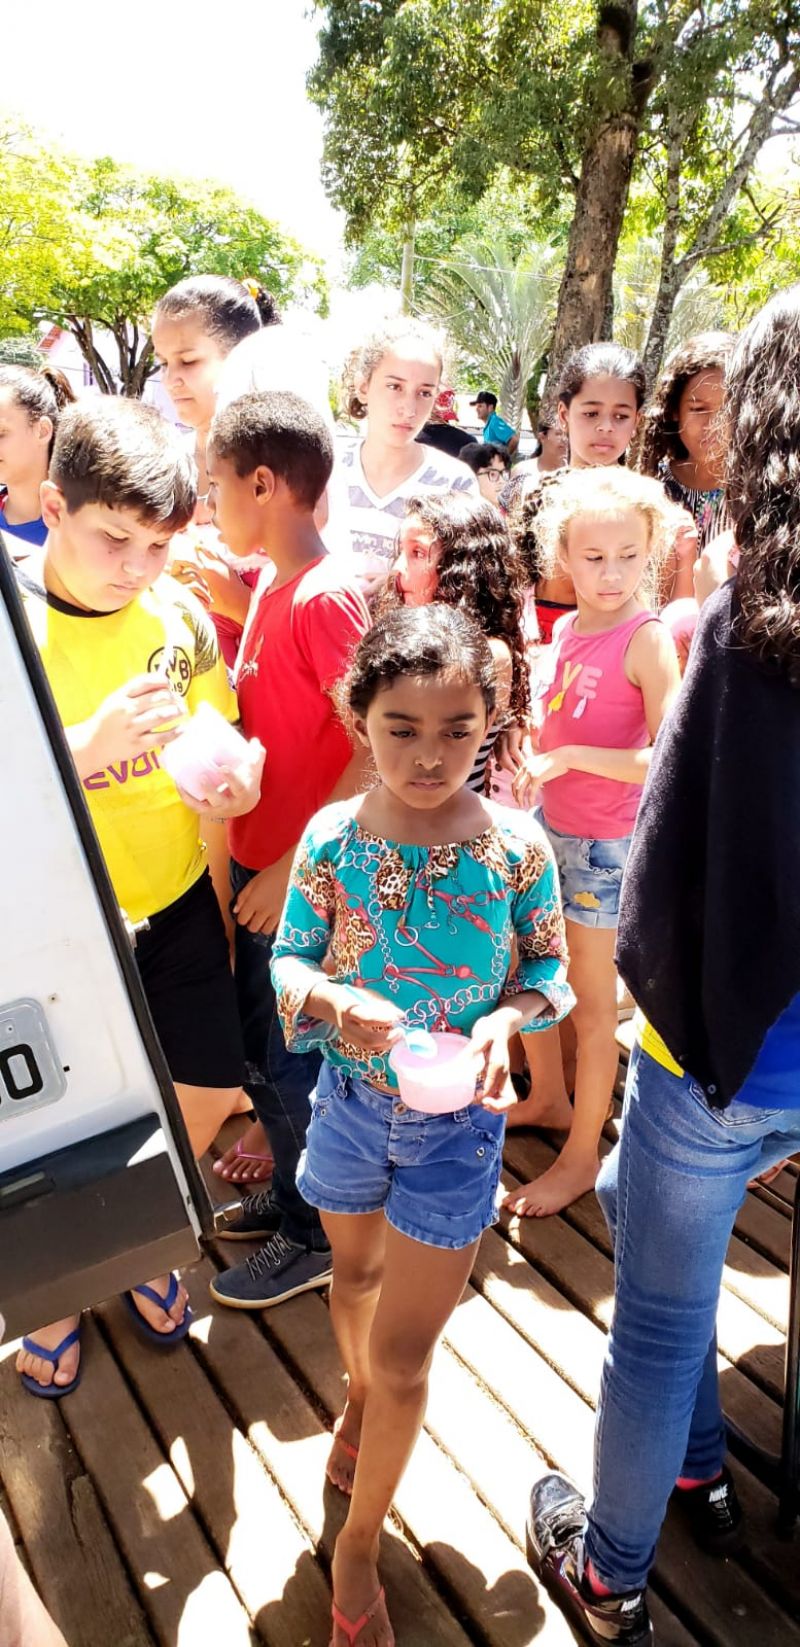 Dia das Crianças é comemorado com “Rua do Lazer” na Praça.